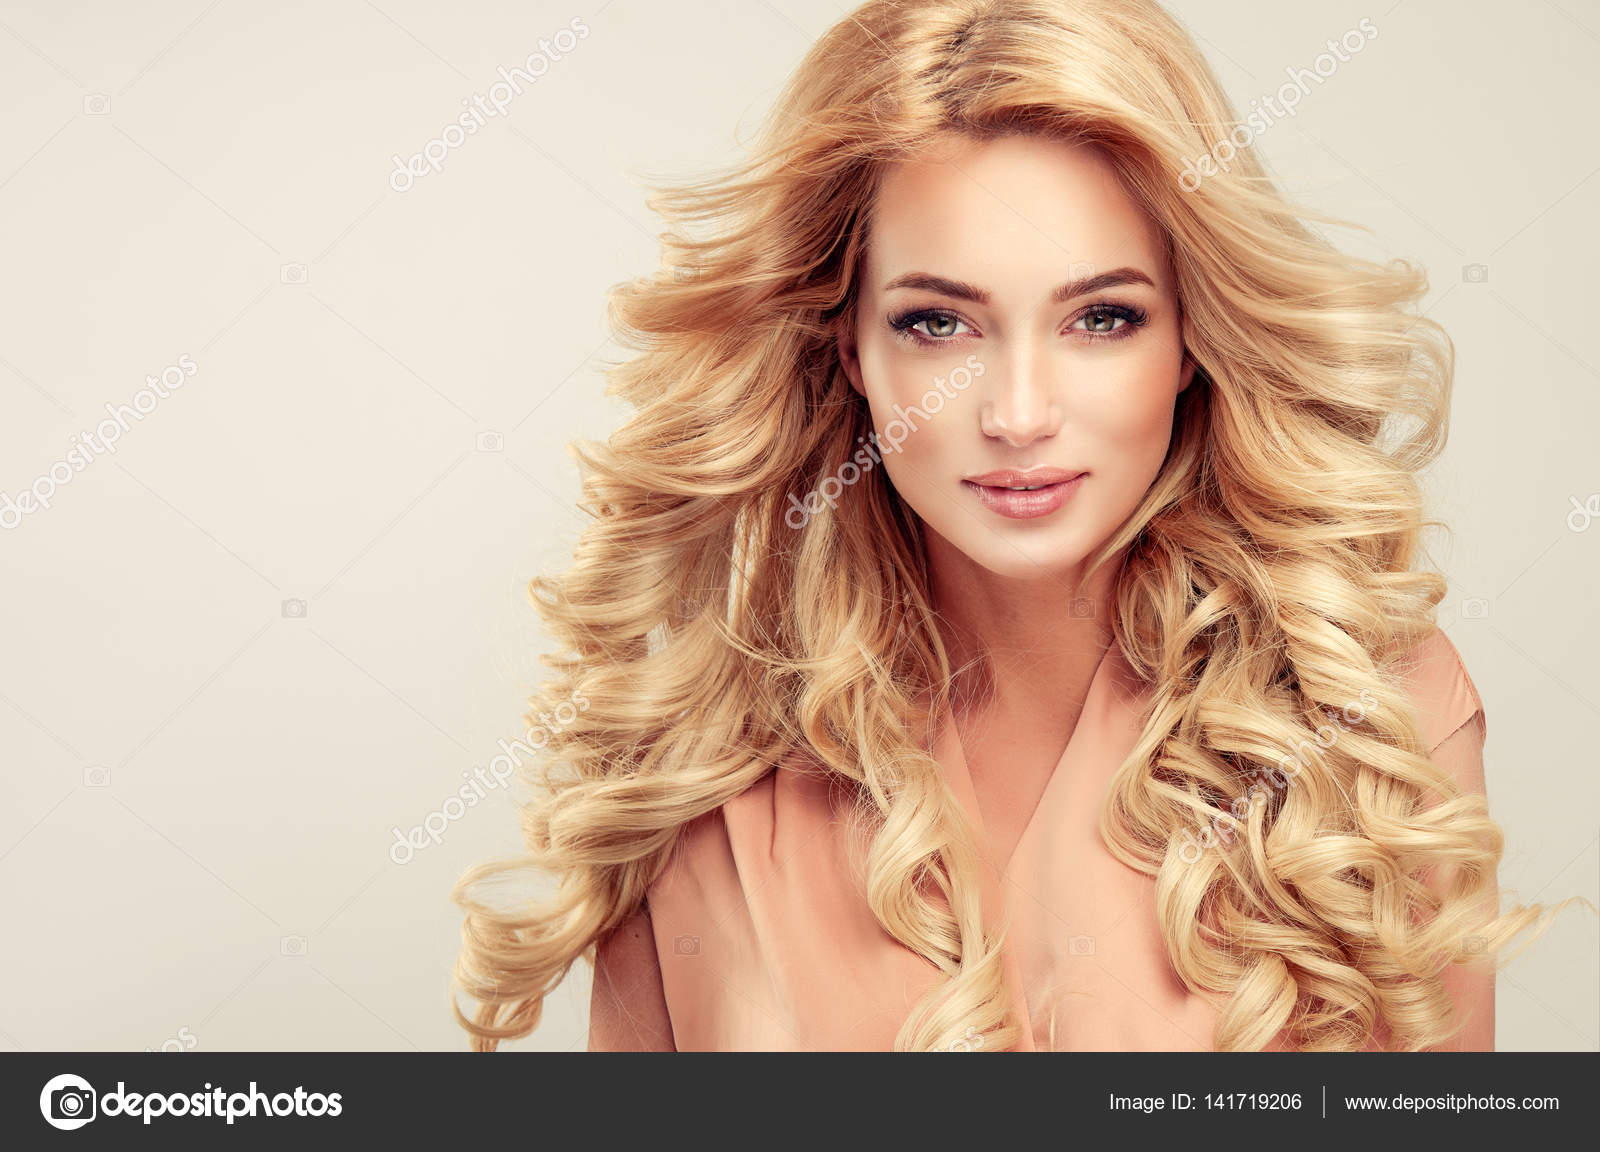 5. Nerdy Blonde Hair Girl - Dreamstime - wide 4